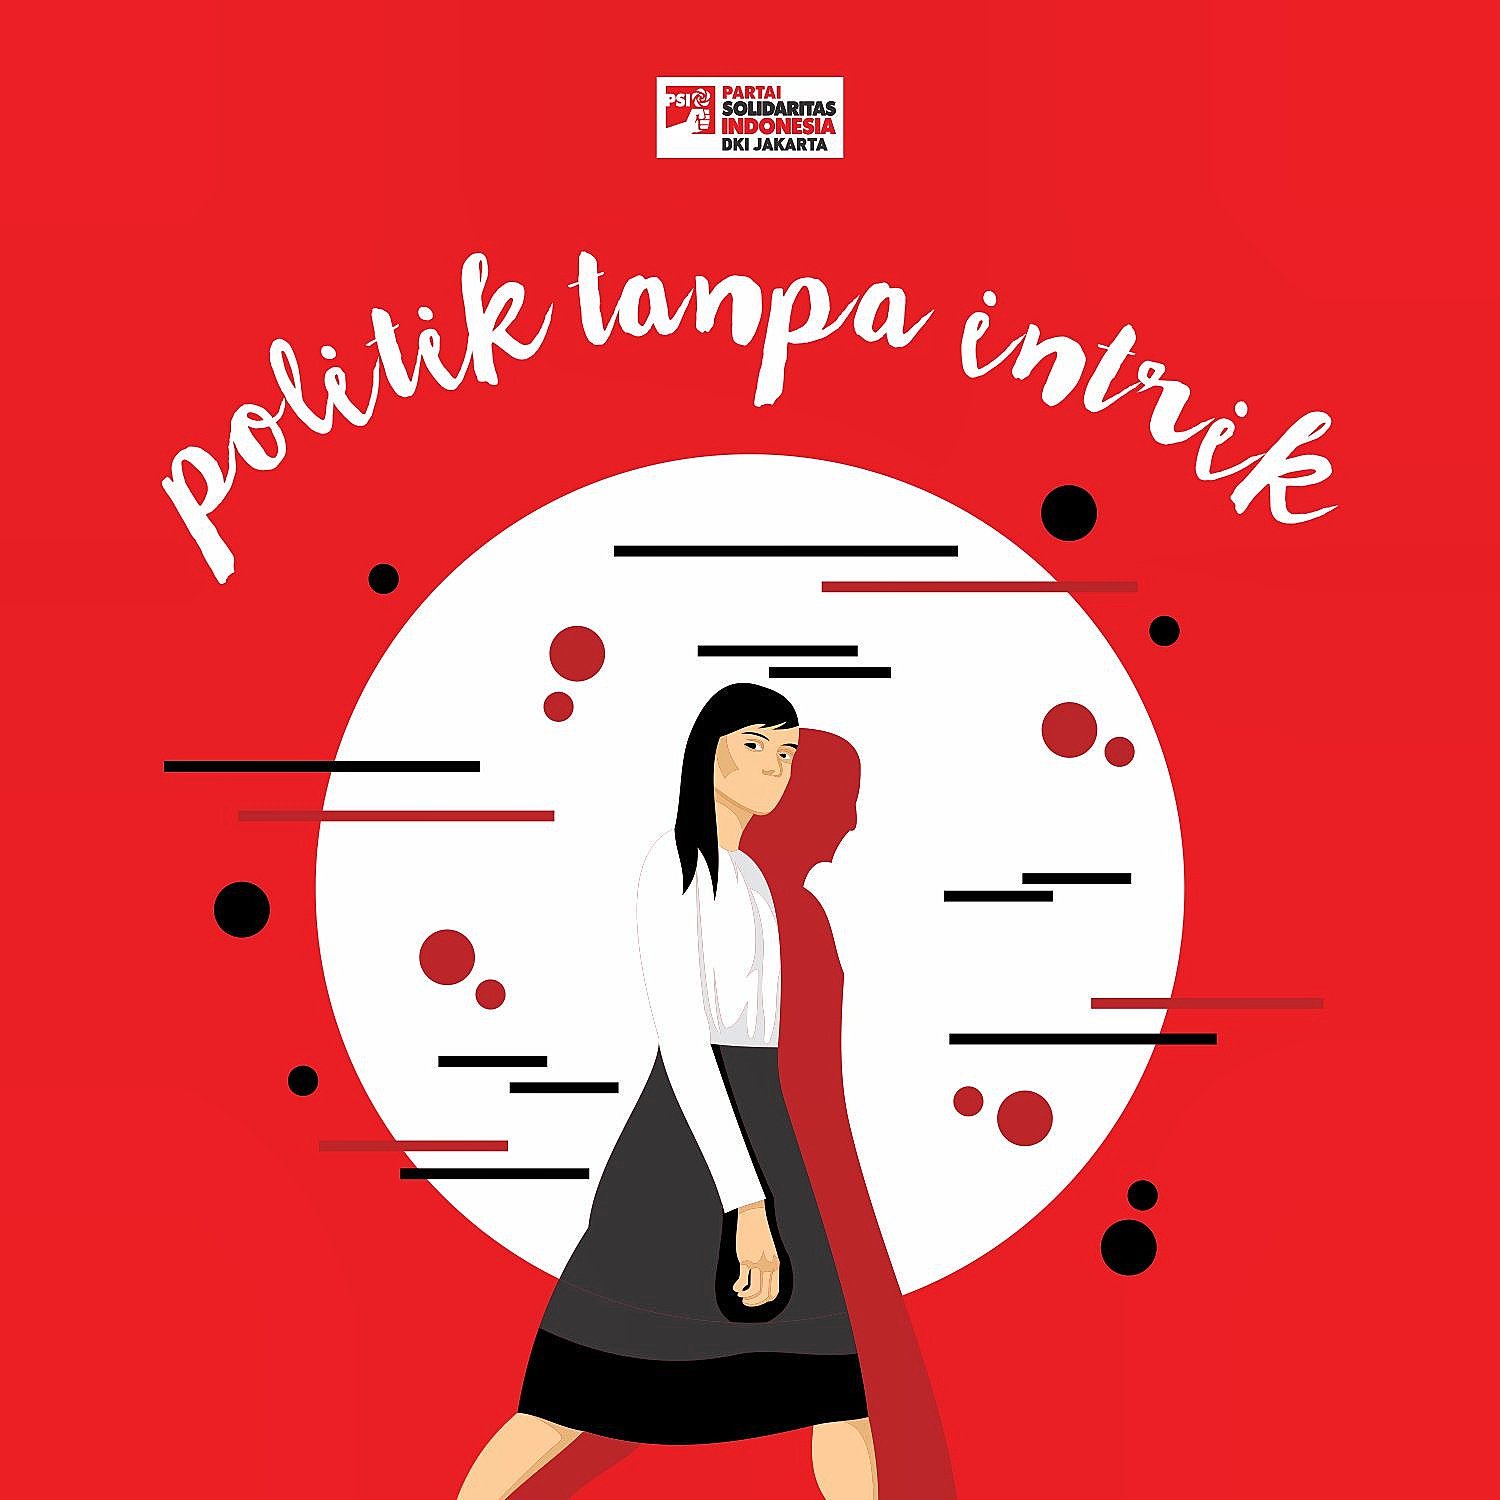 November 2017 – Laman 3 – Partai Solidaritas Indonesia